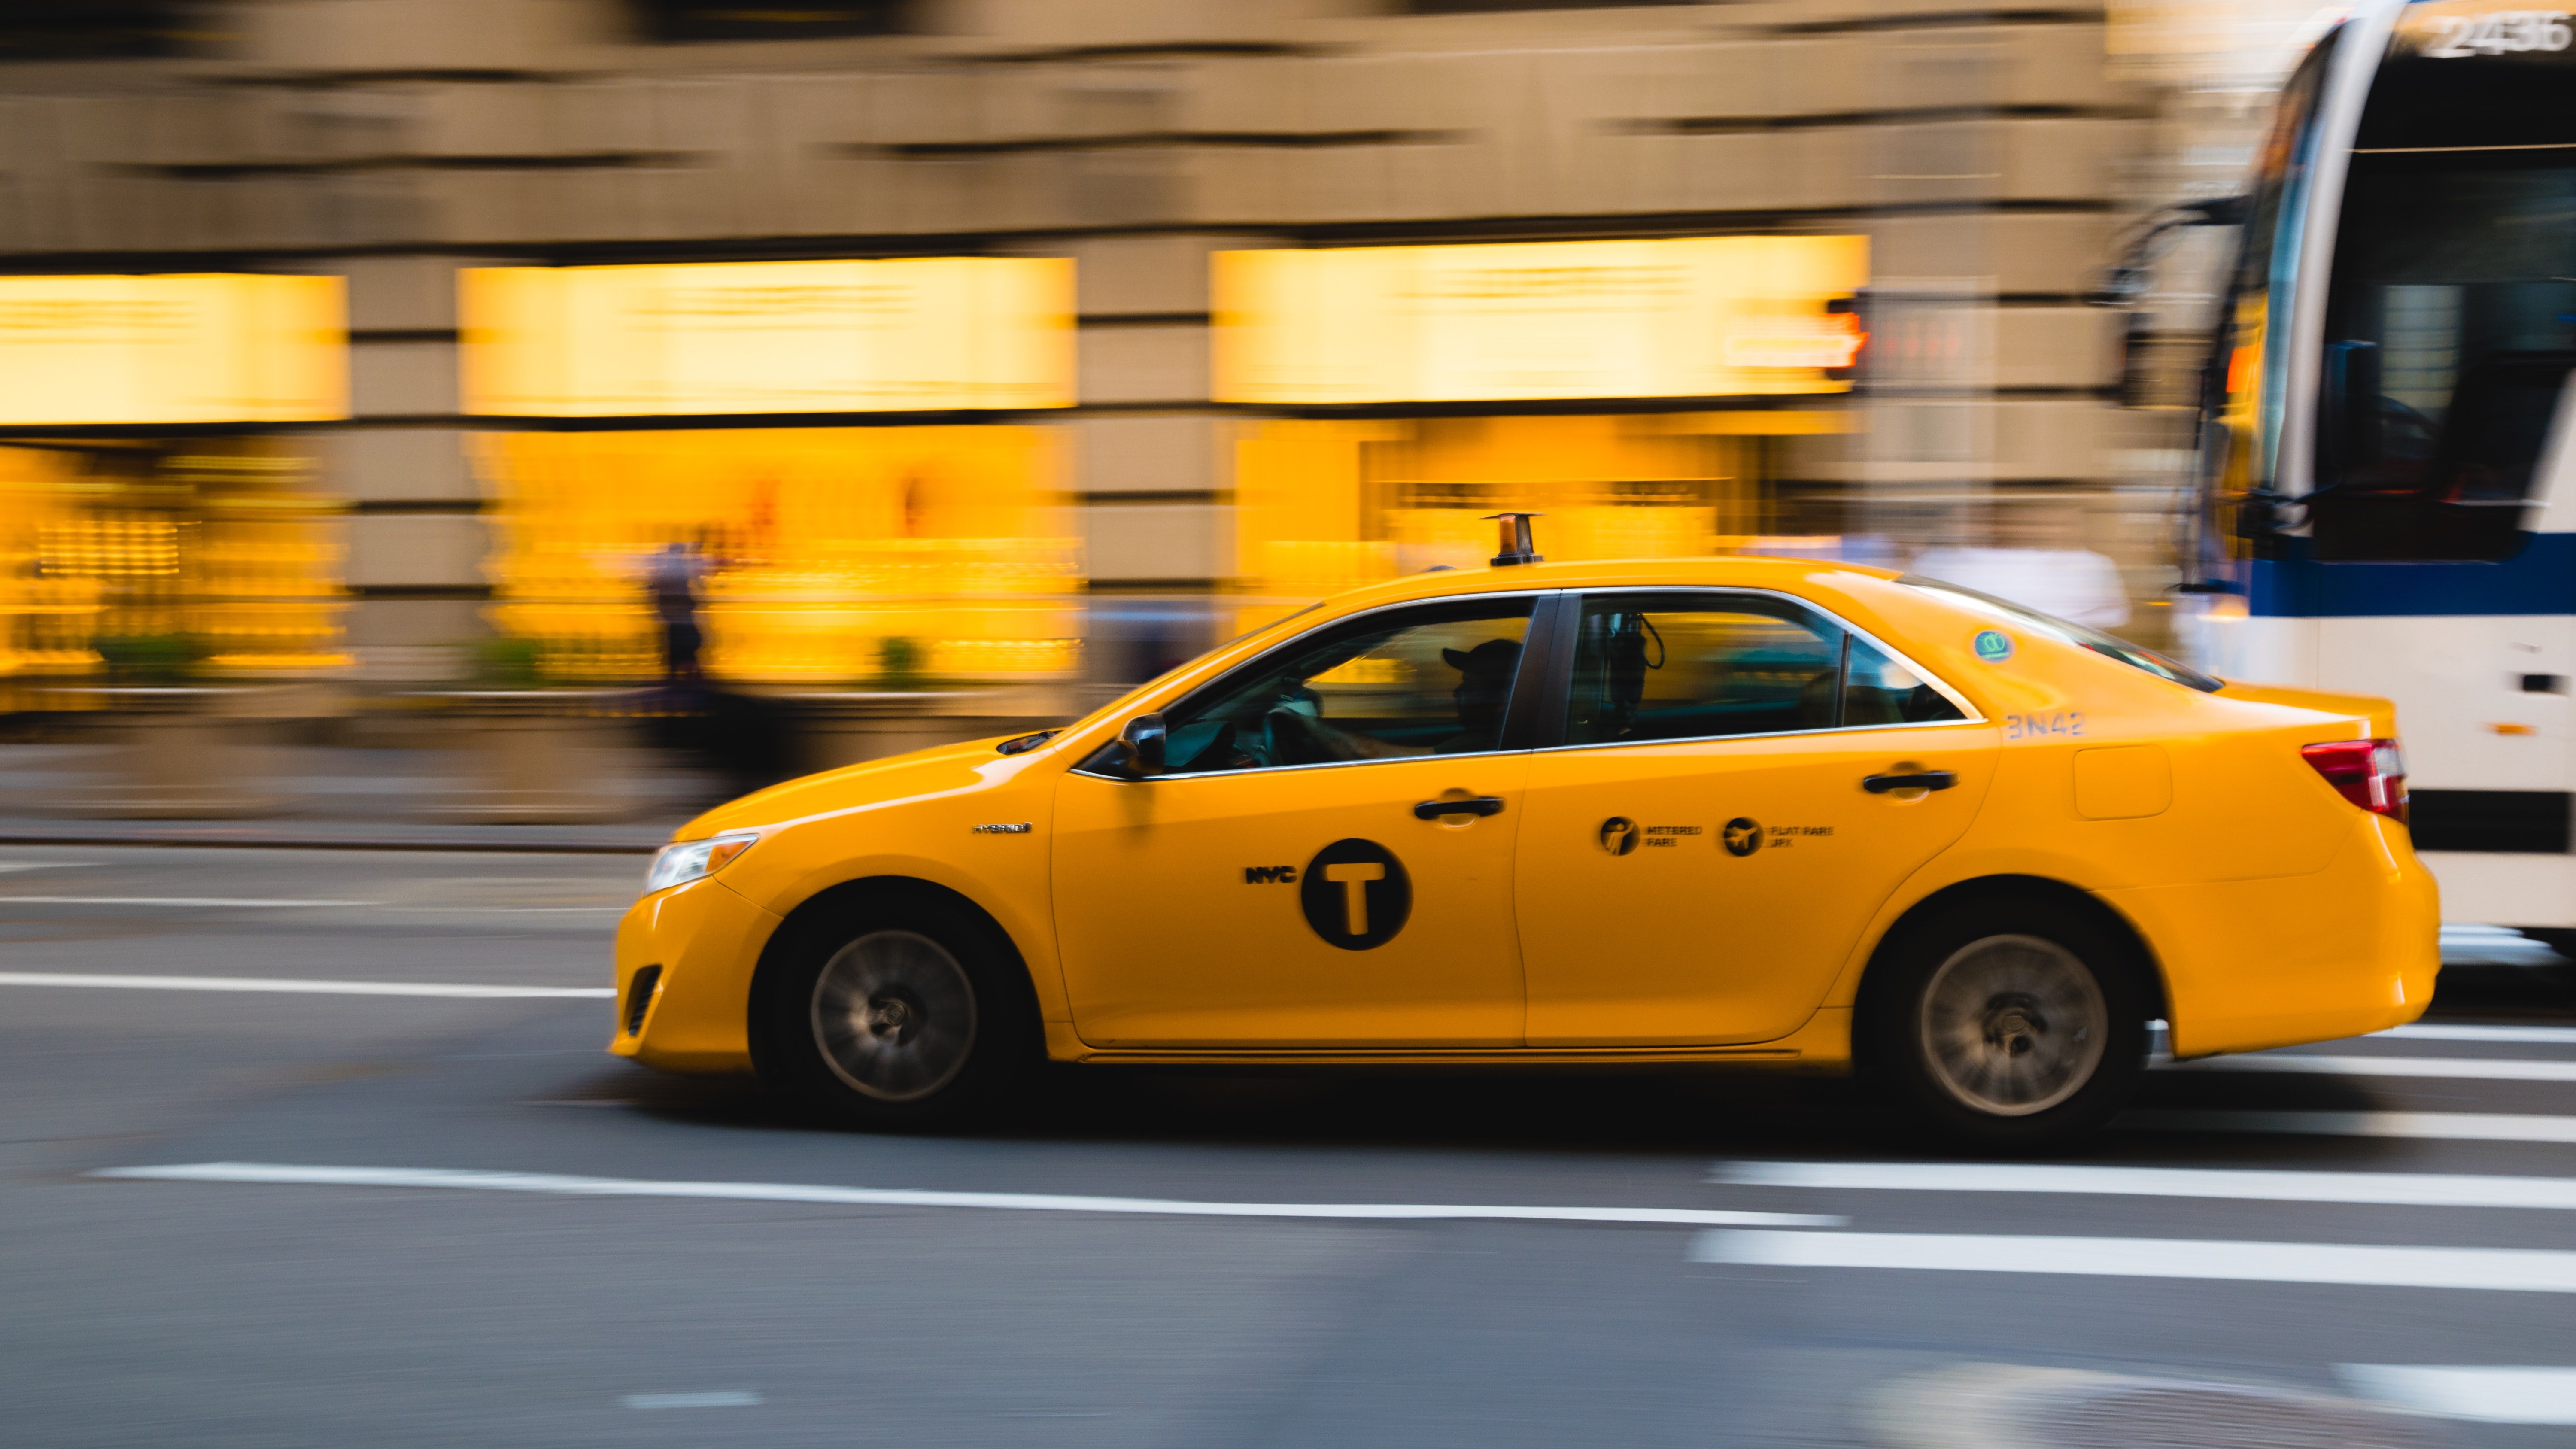 Taxi. | Source: Pexels